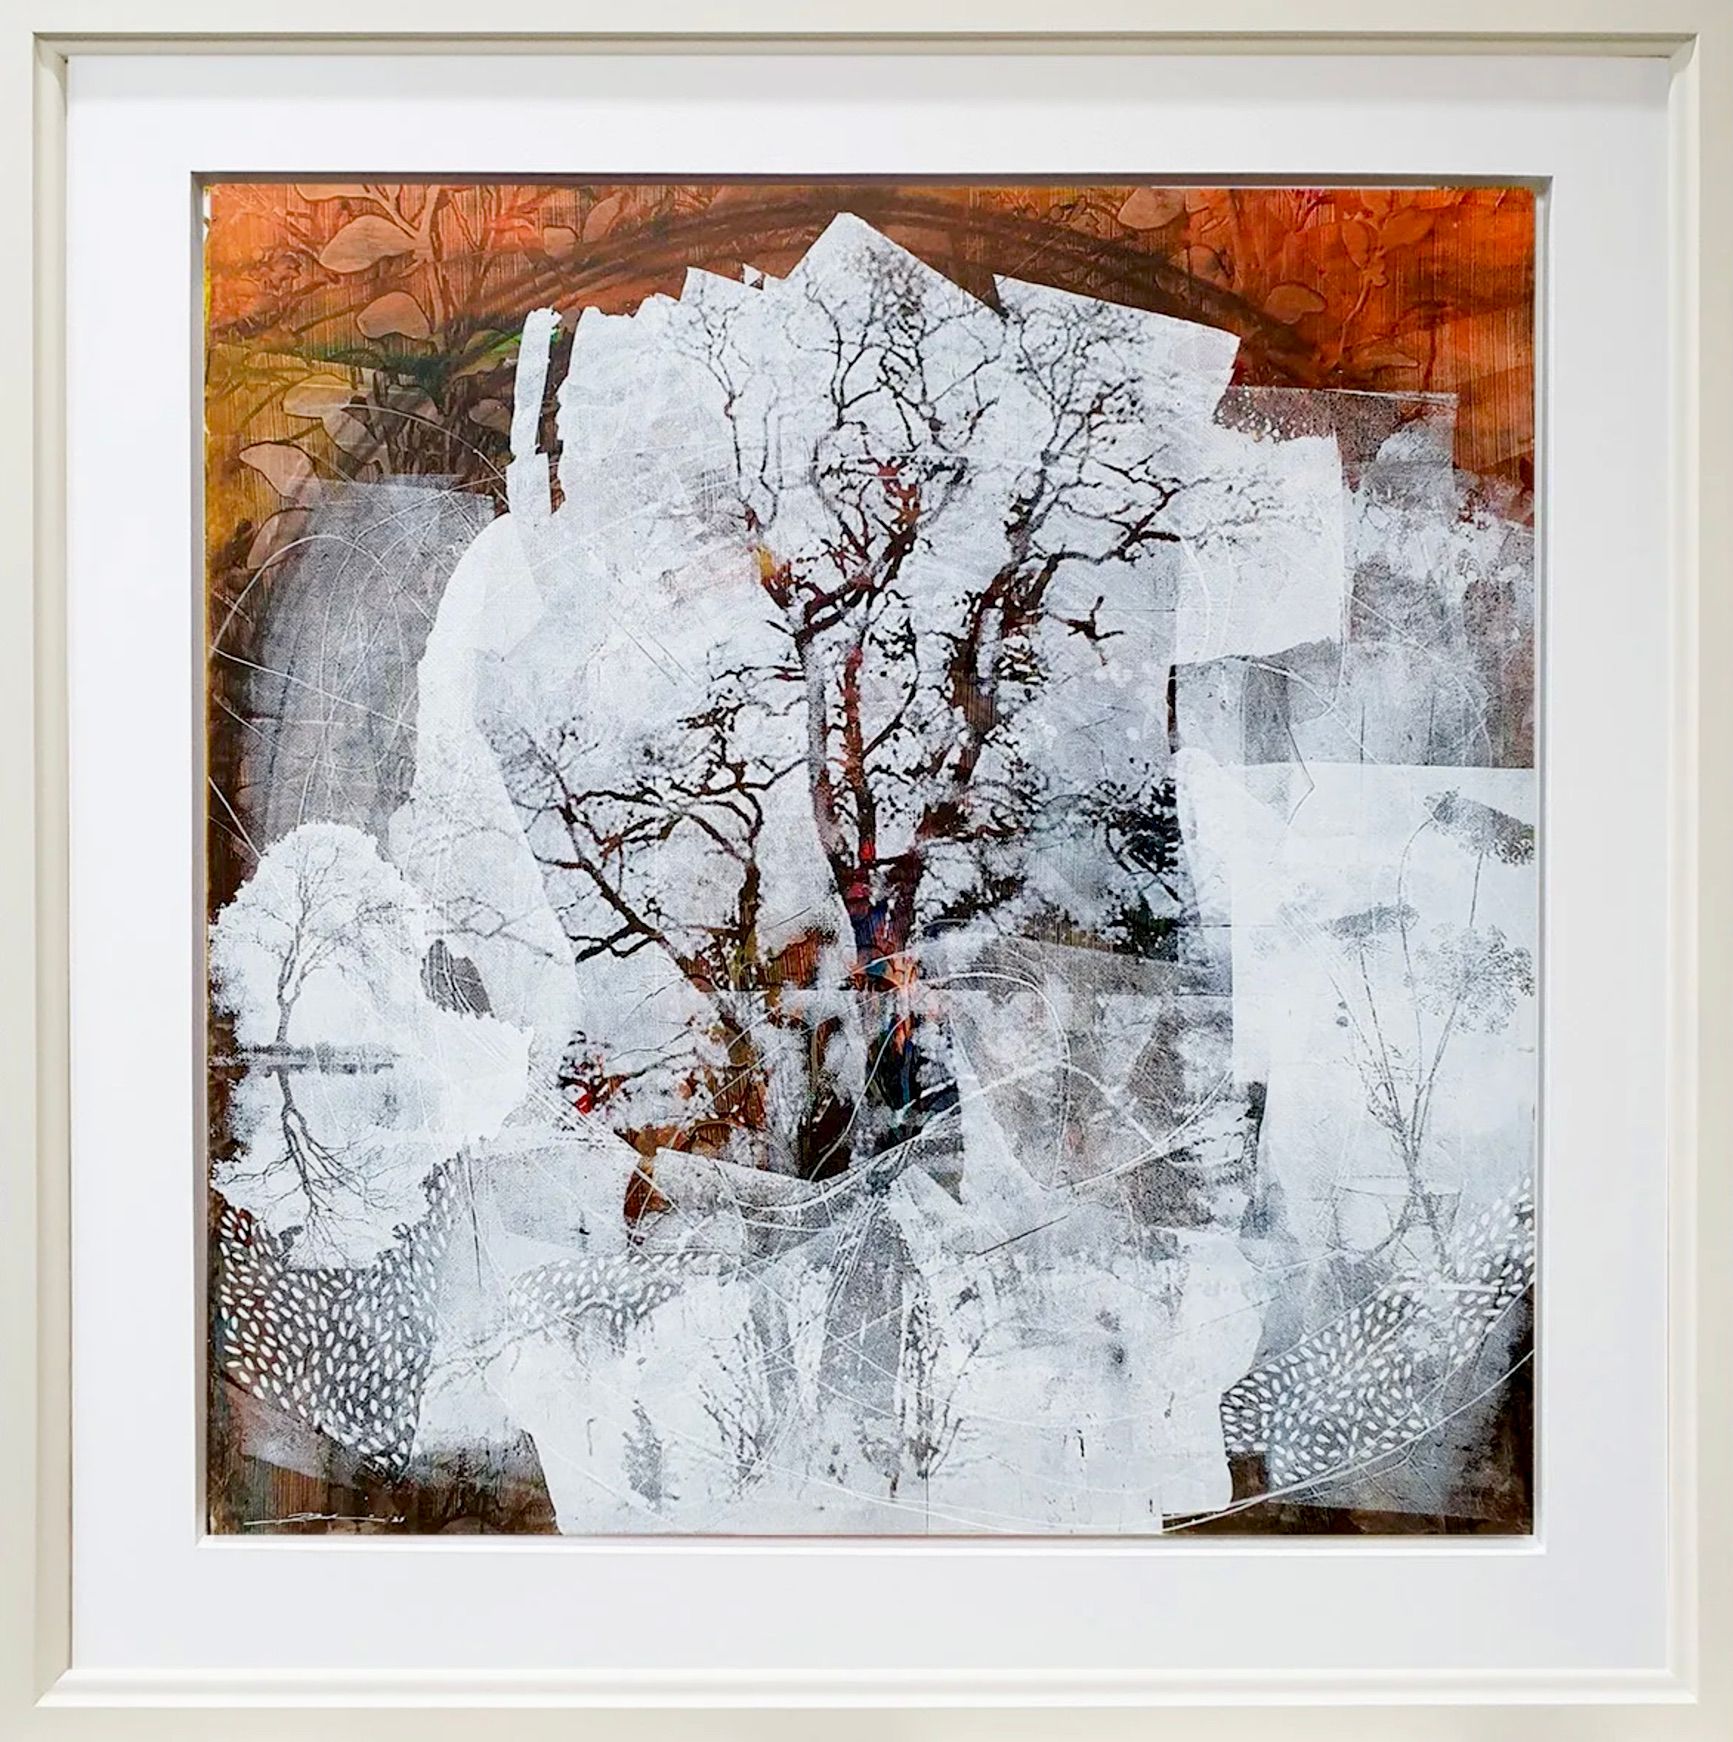 Dieter Nusbaum abstrakte Malerei Siebdruck Baum ohne Blätter und wild Blumen Illustration Natur Formen